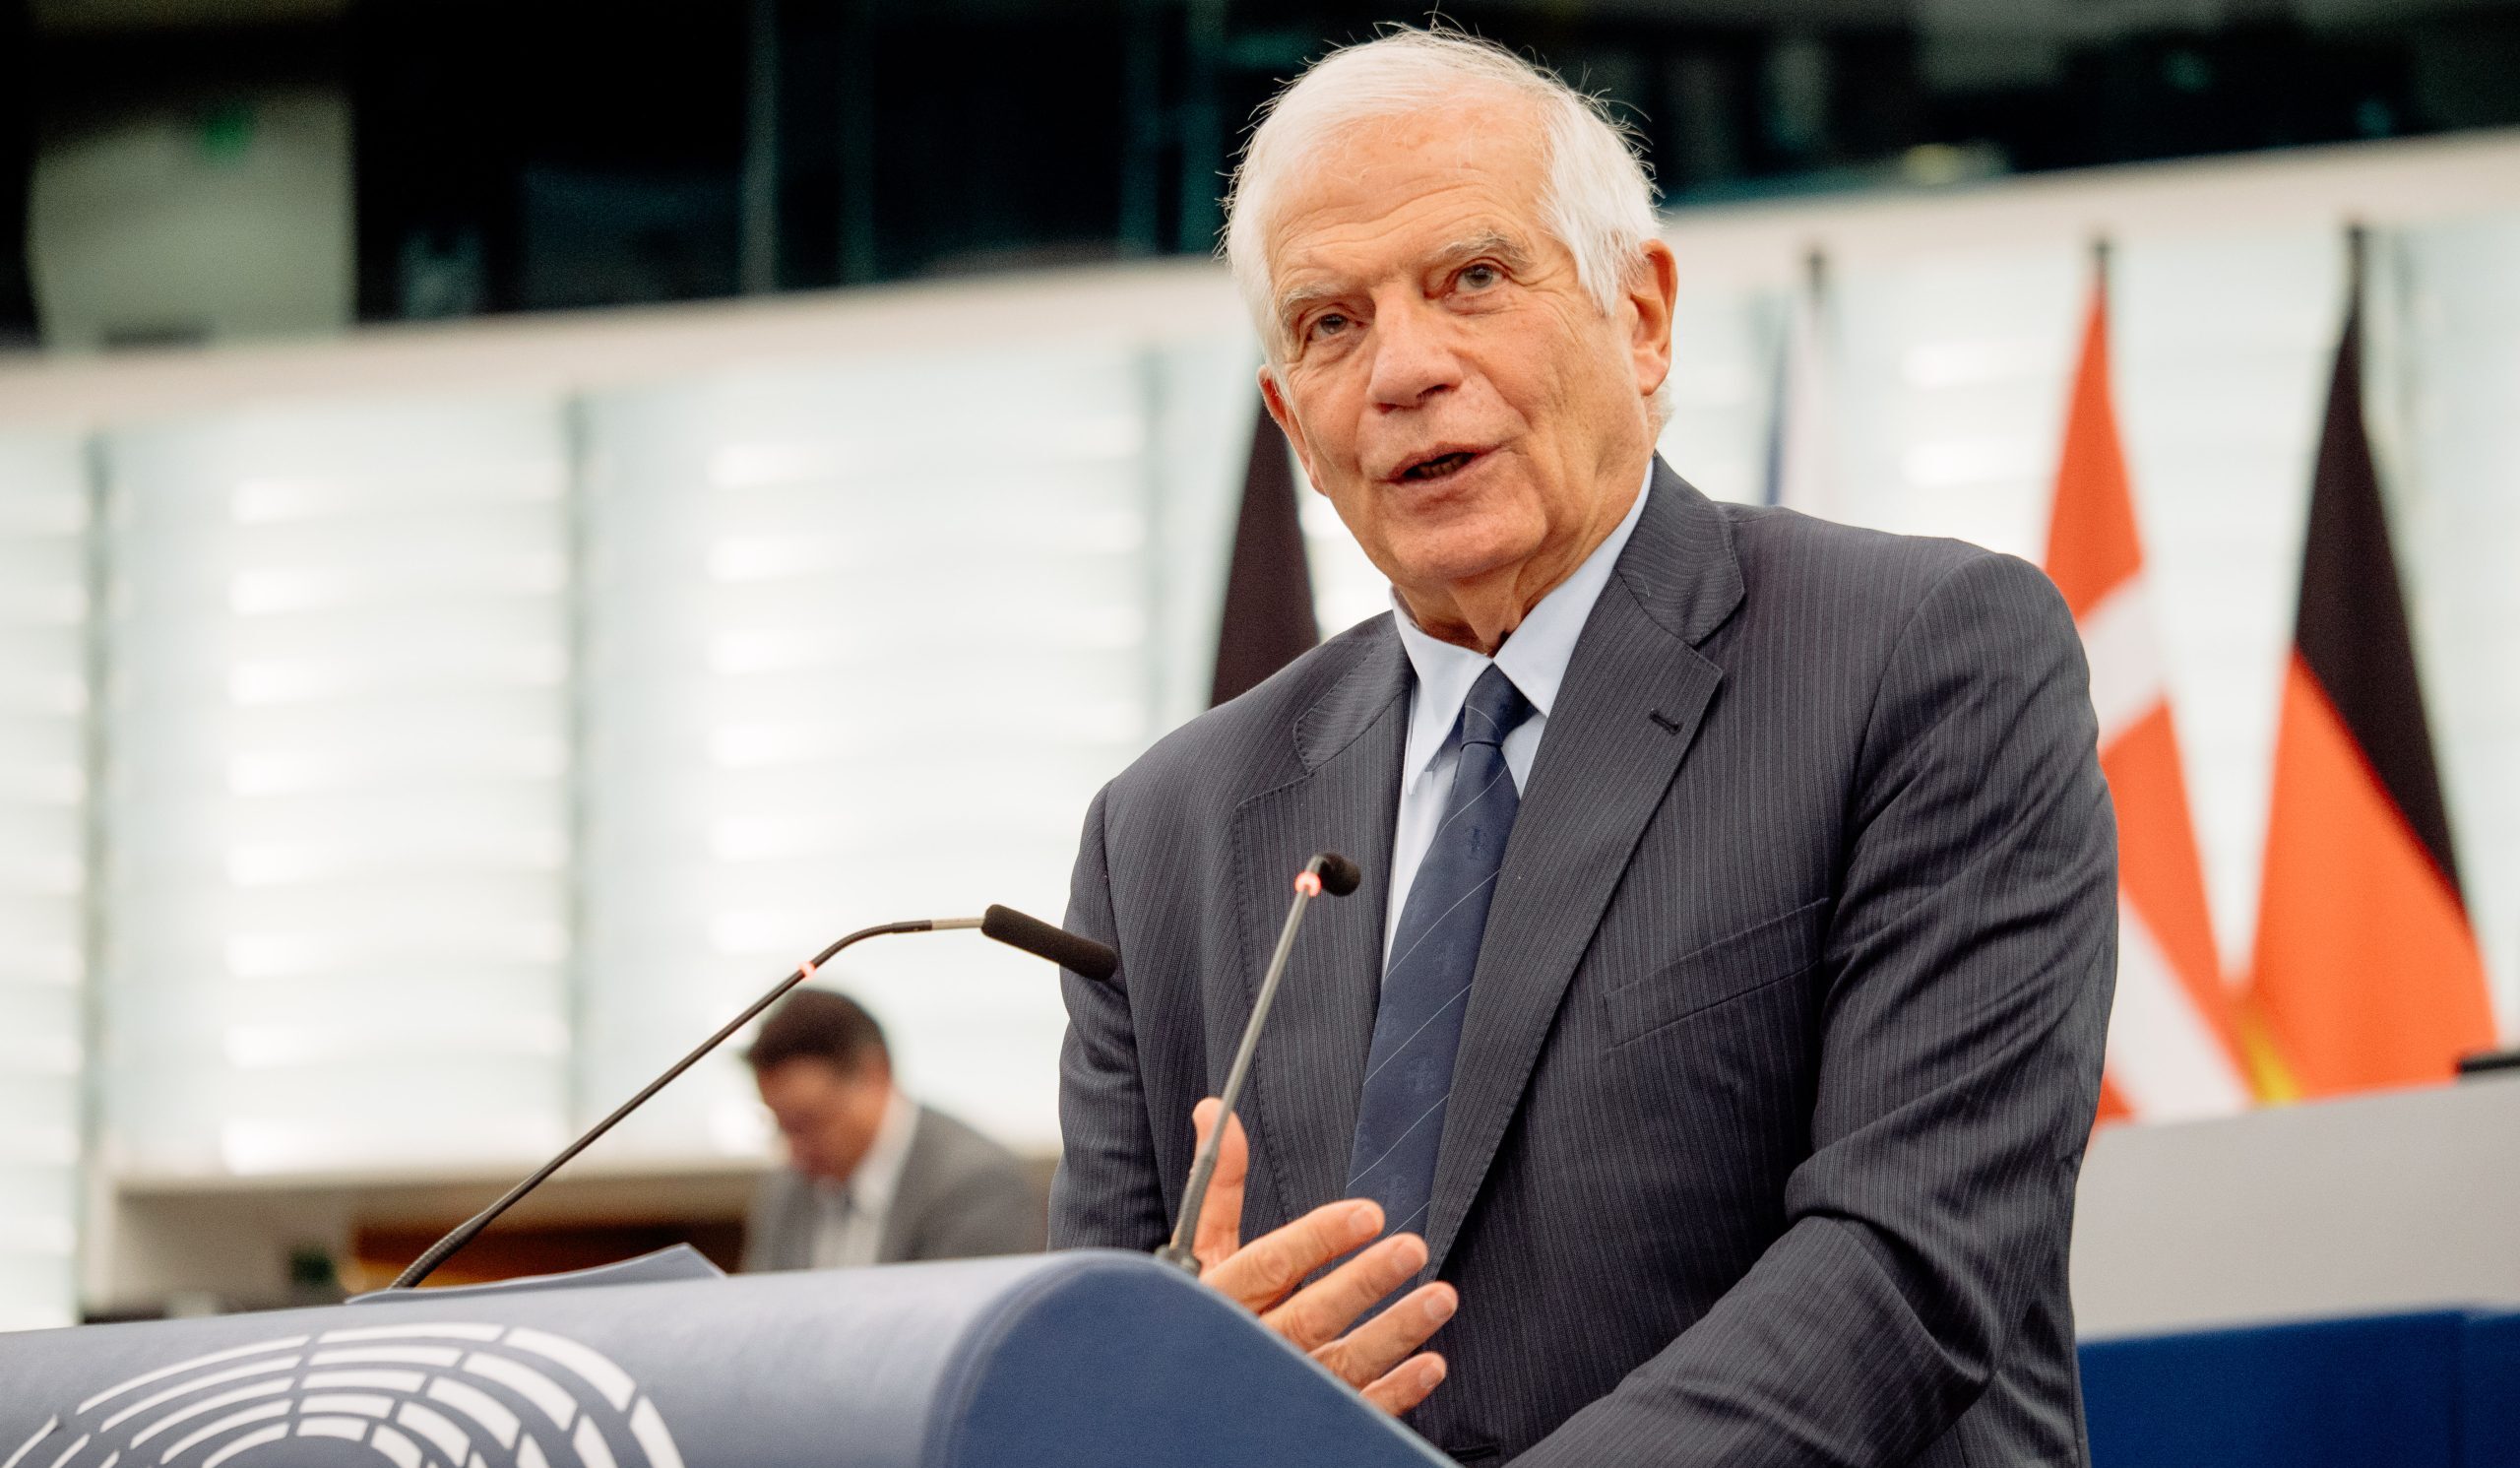 EU foreign affairs chief Josep Borrell: A Call for Restraint and Empathy